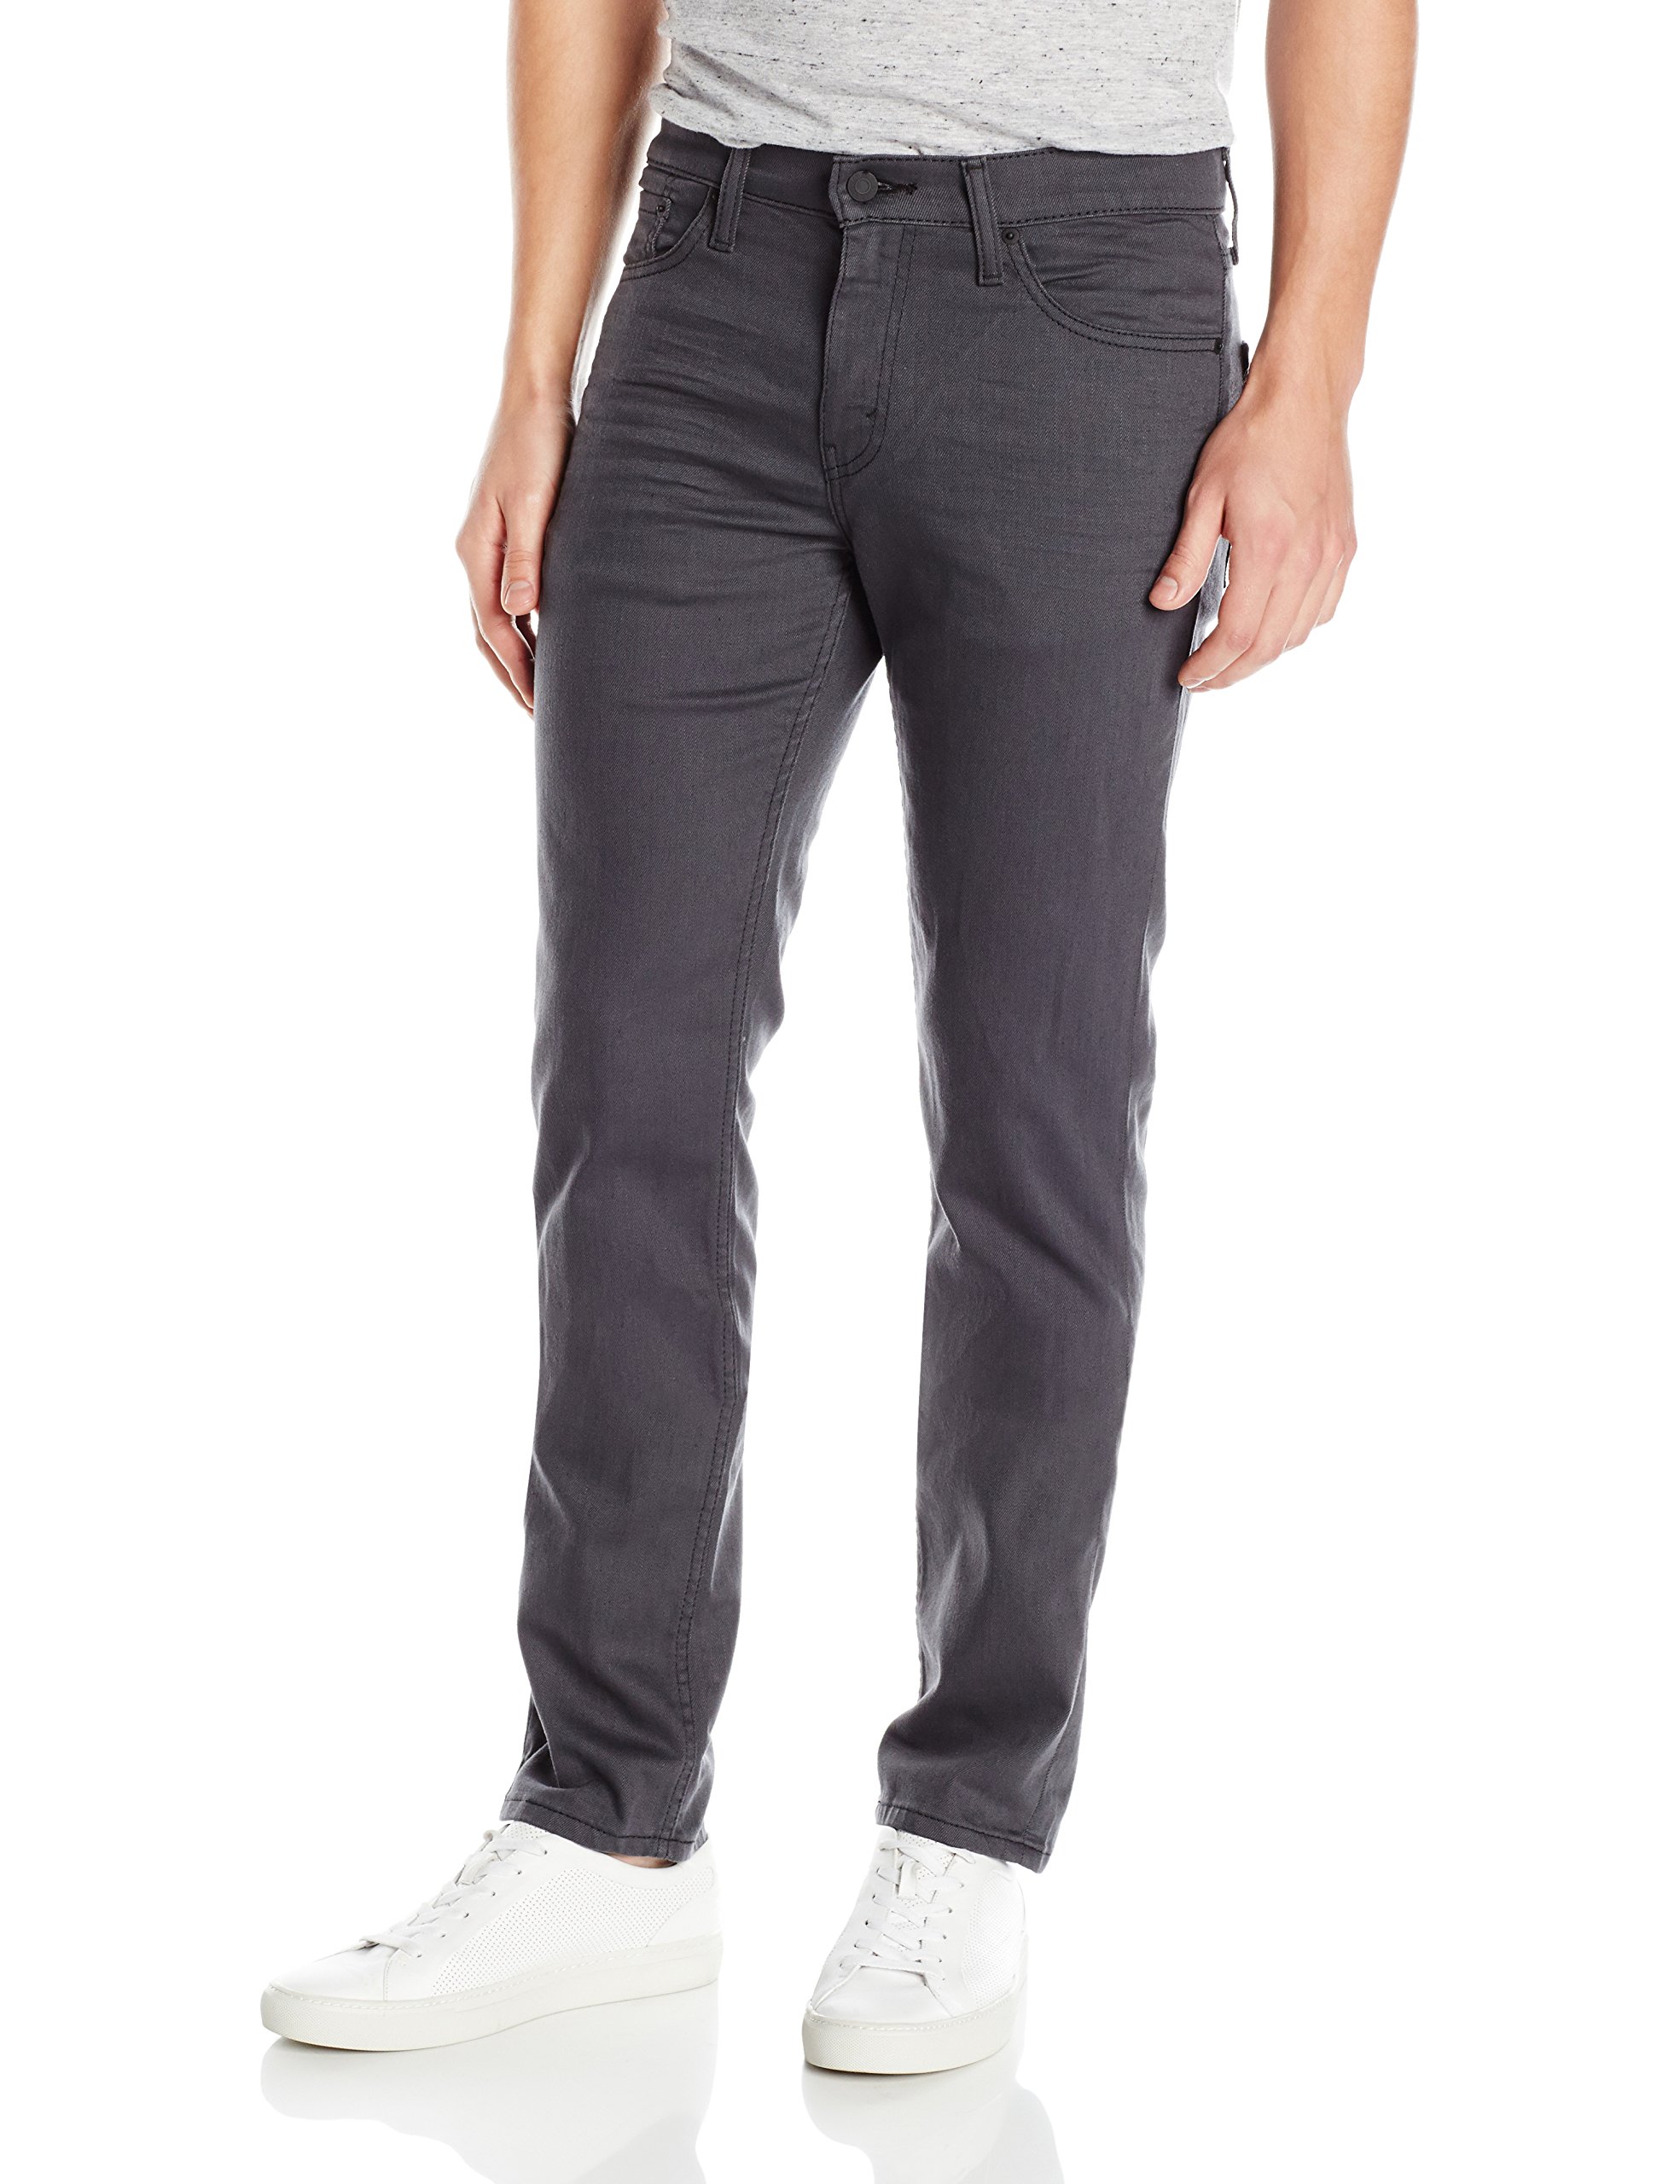 Mens Levi's 511 Slim Fit Denim Jeans Casual Cotton Black Grey Pants ...